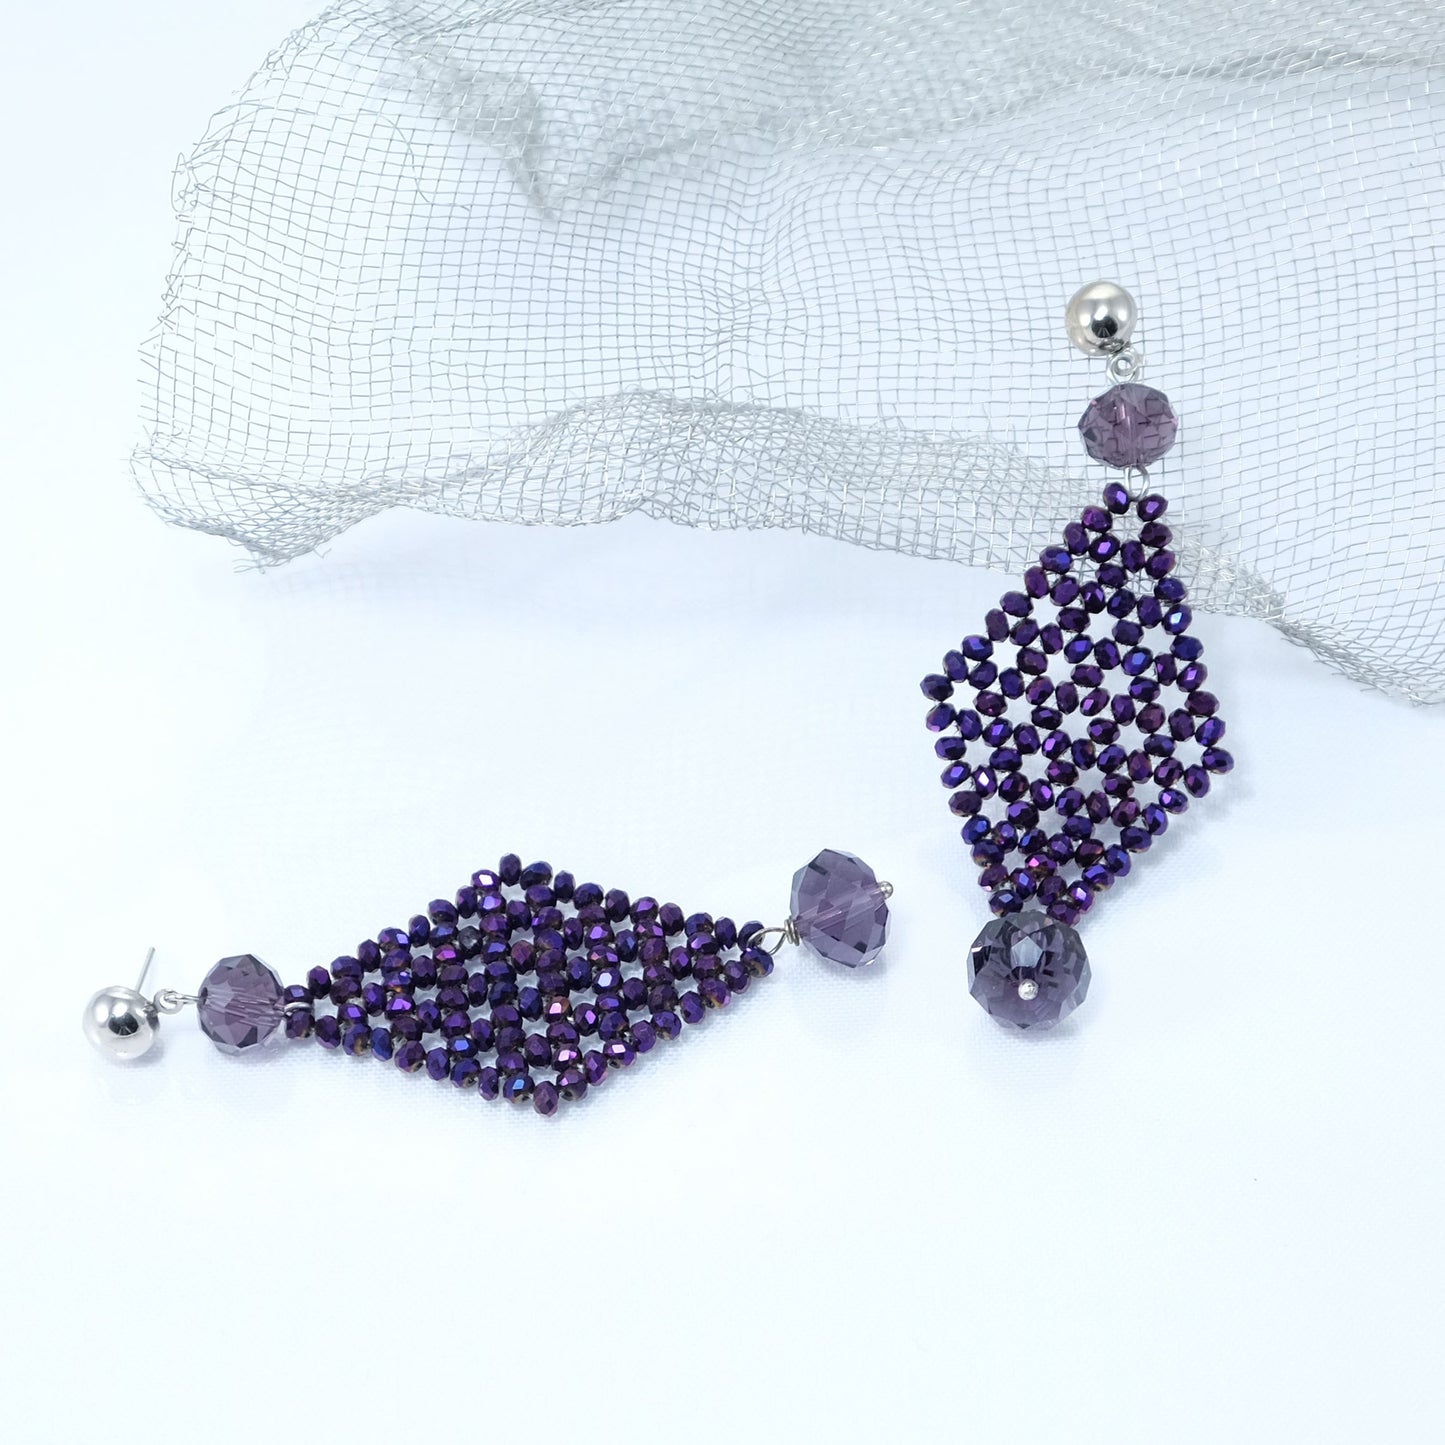 Orecchini I CRISTALLI .030  piccoli cristalli viola formano un rombo, monachelle acciaio.